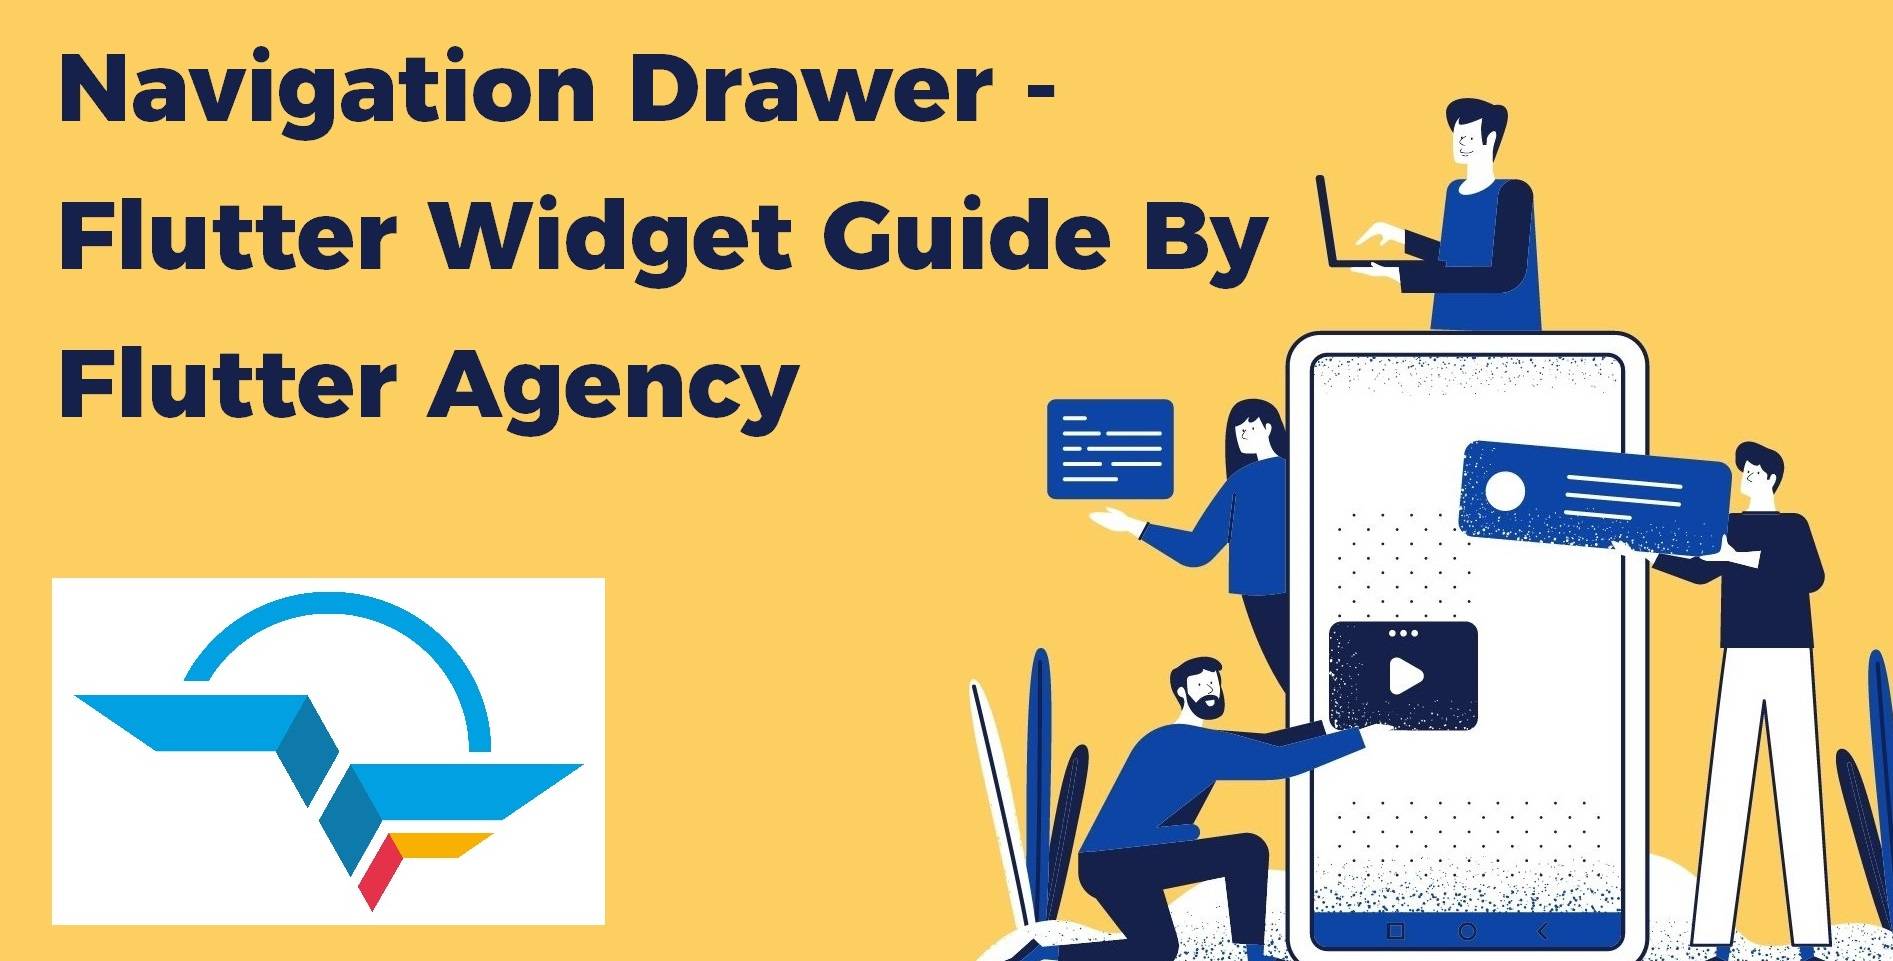 Navigation Drawer - Flutter Widget Guide By Flutter Agency